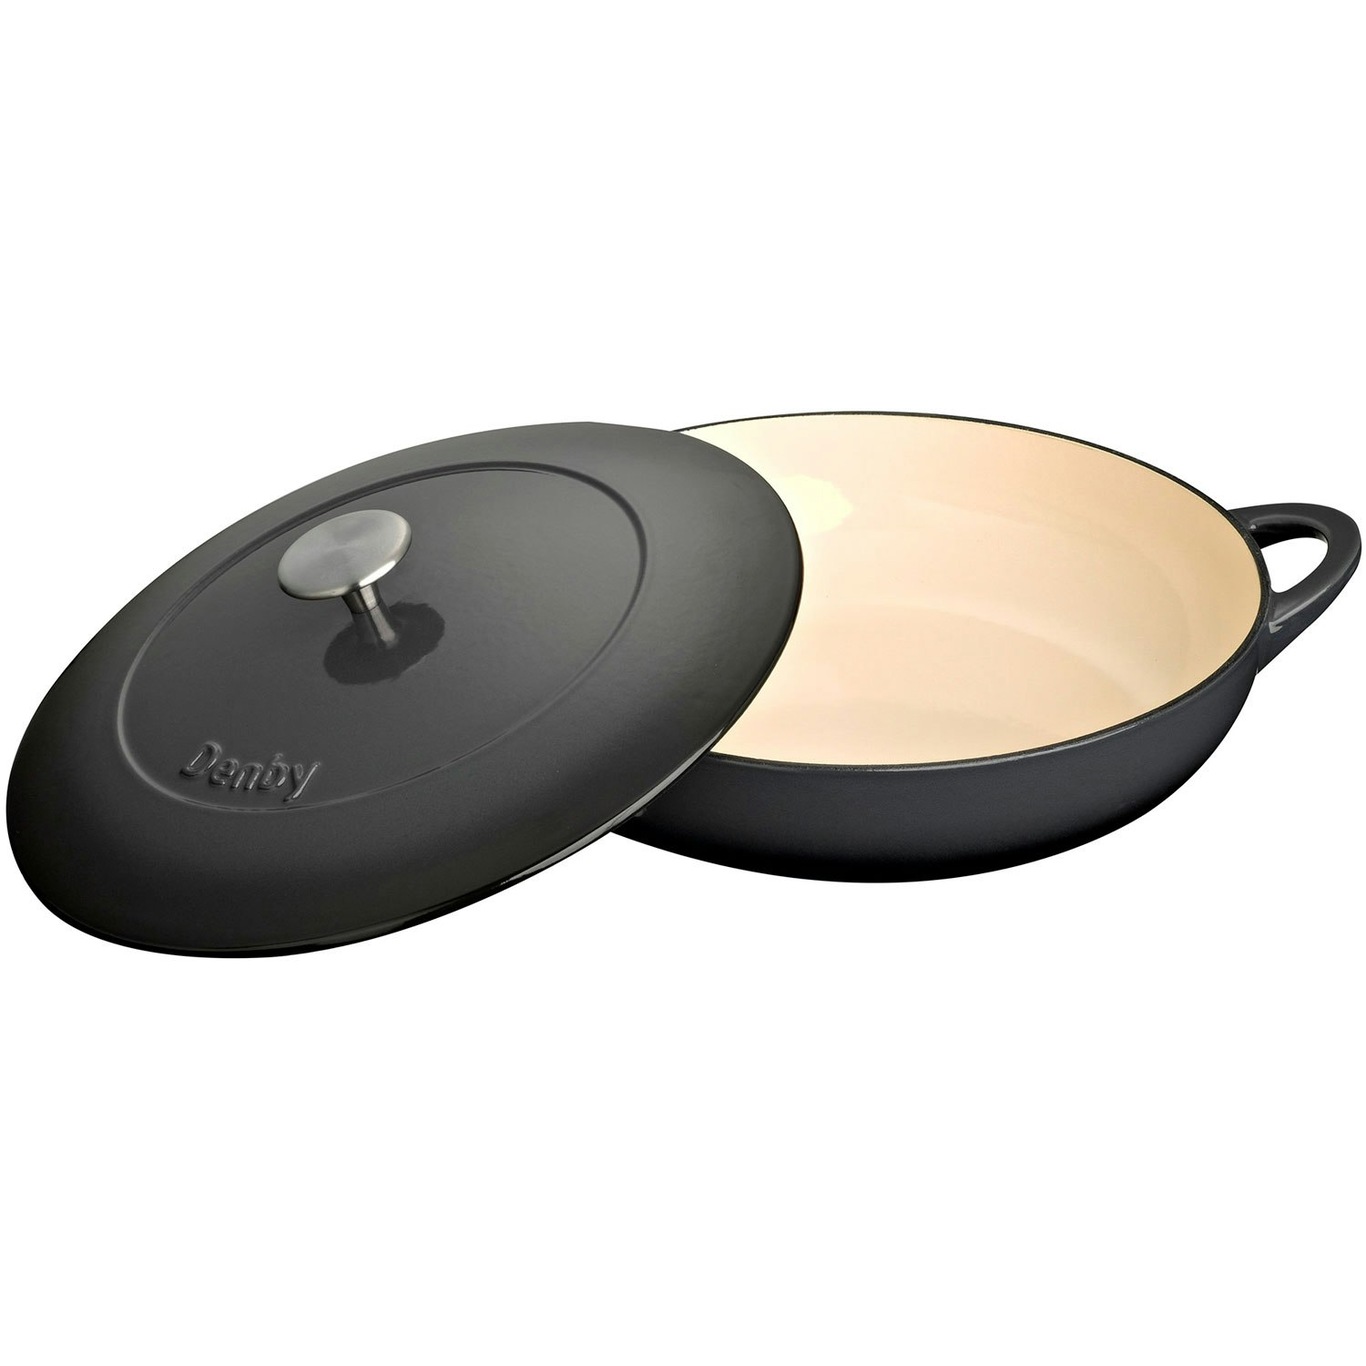 https://royaldesign.com/image/2/denby-cast-iron-30cm-shallow-casserole-7?w=800&quality=80